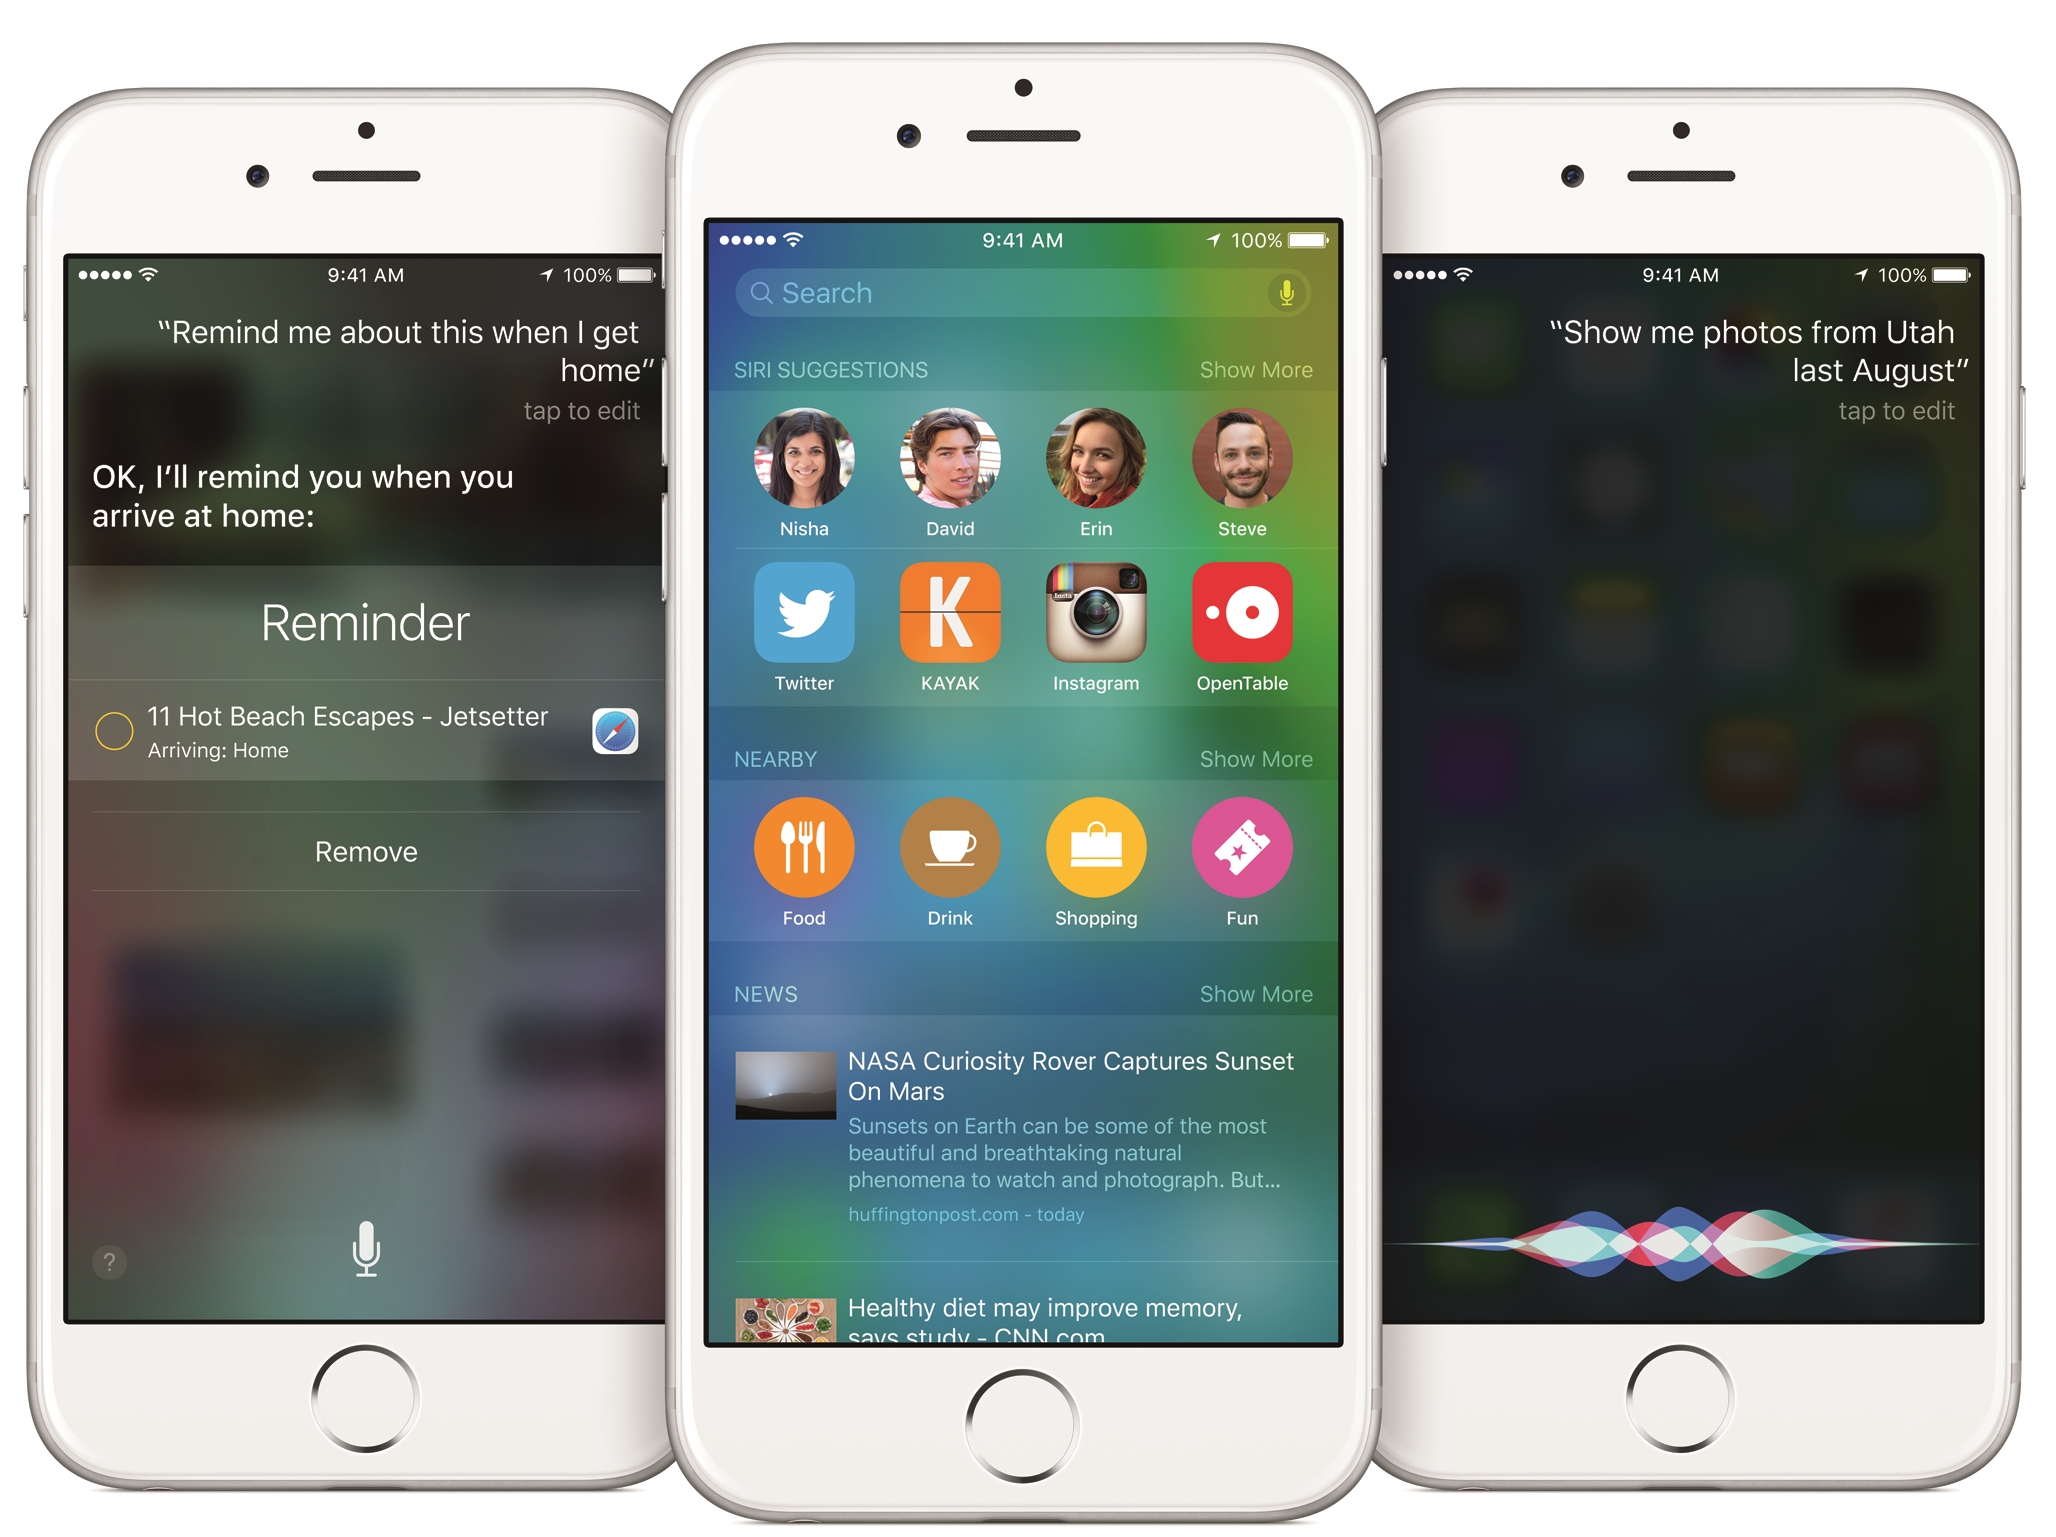 Apple Enabling Safari Ad Blockers in iOS 9?